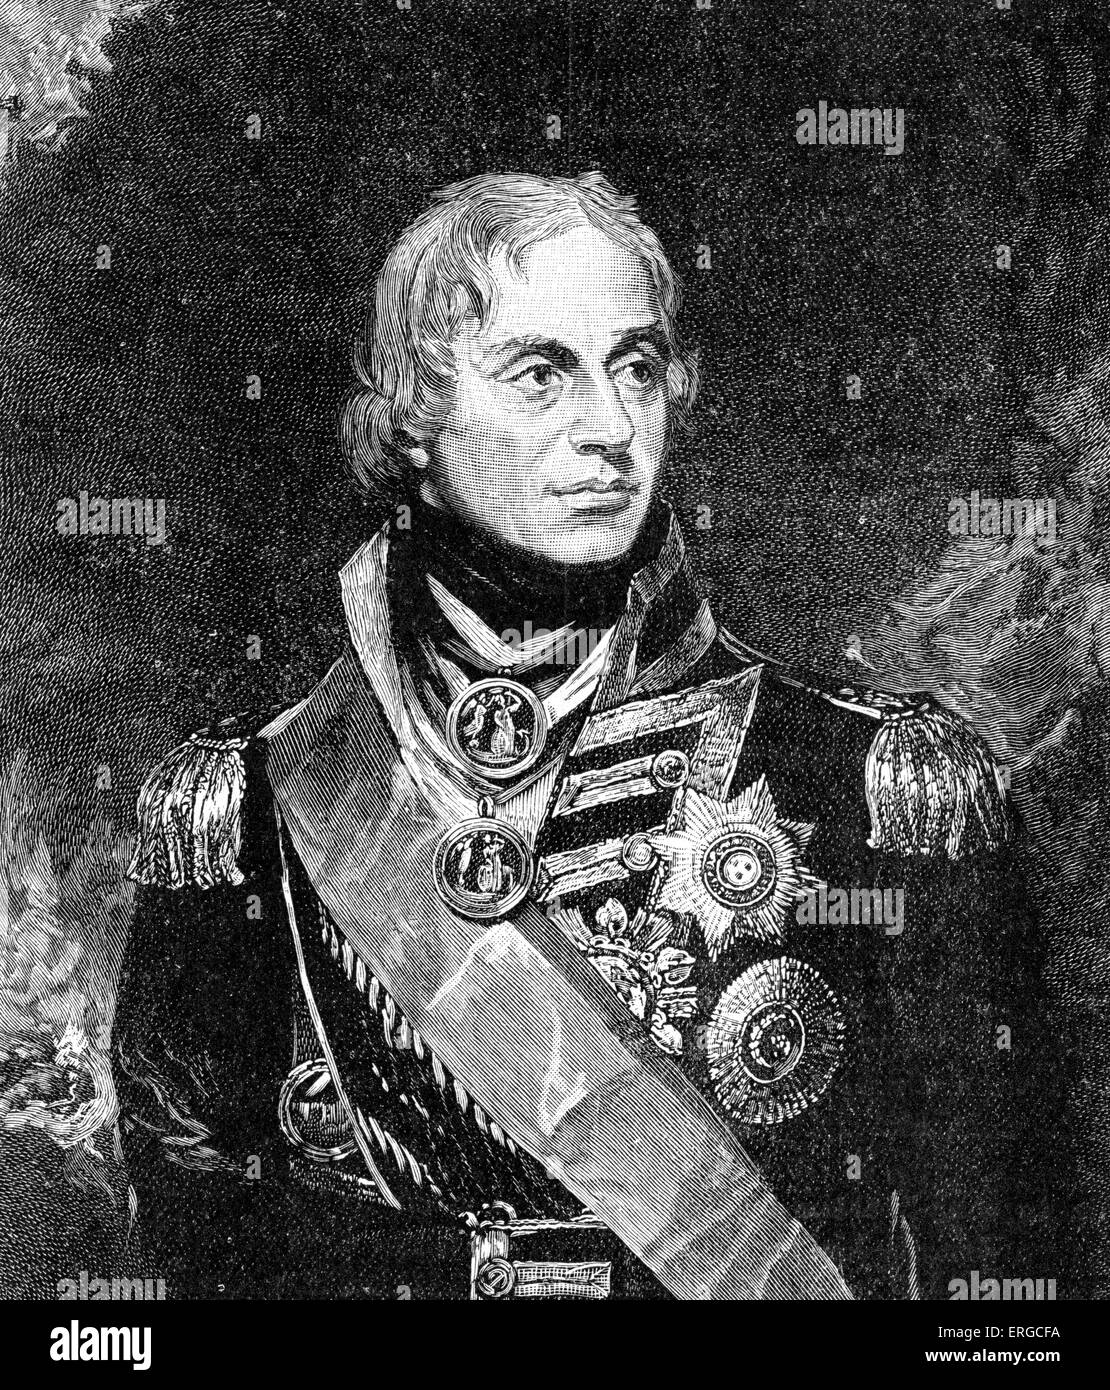 Lord Horatio Nelson - nach dem Porträt von Sir William Beechey. Britischer Admiral berühmt für seine Teilnahme an den napoleonischen Stockfoto